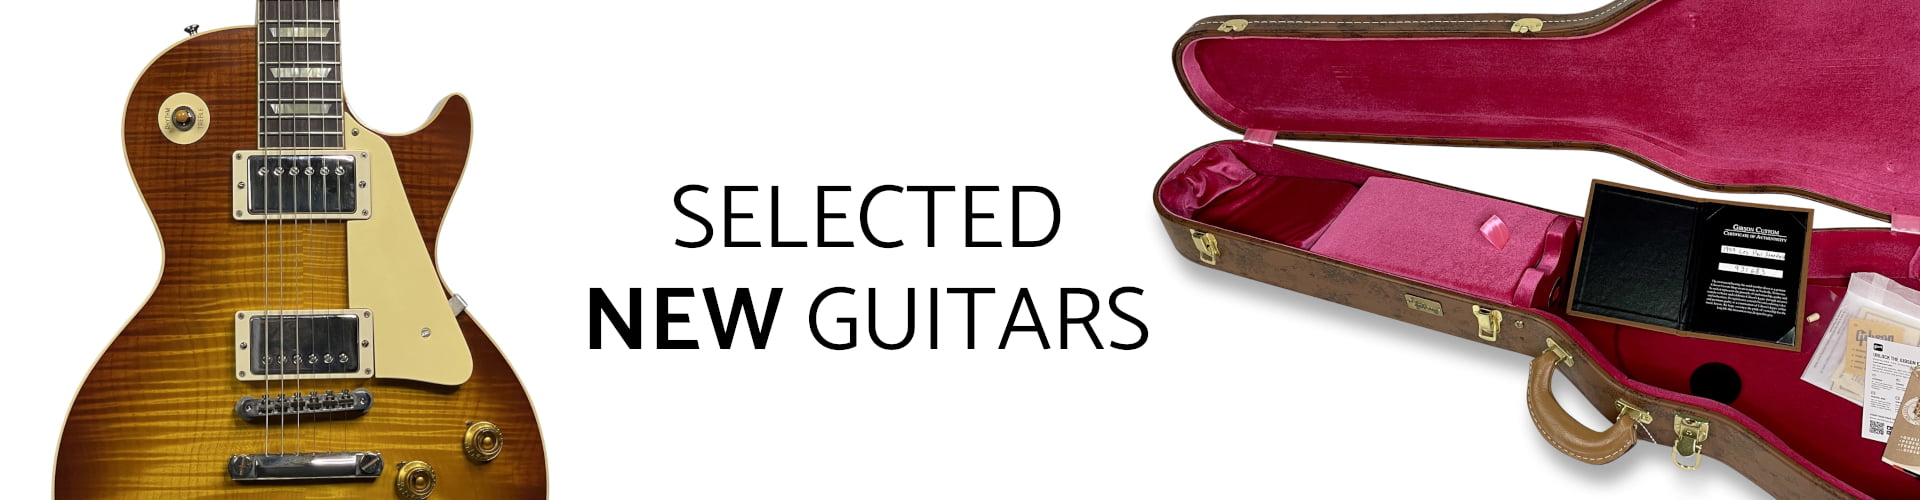 De fineste vintage-guitarer til salg 18 Guitar Hunter